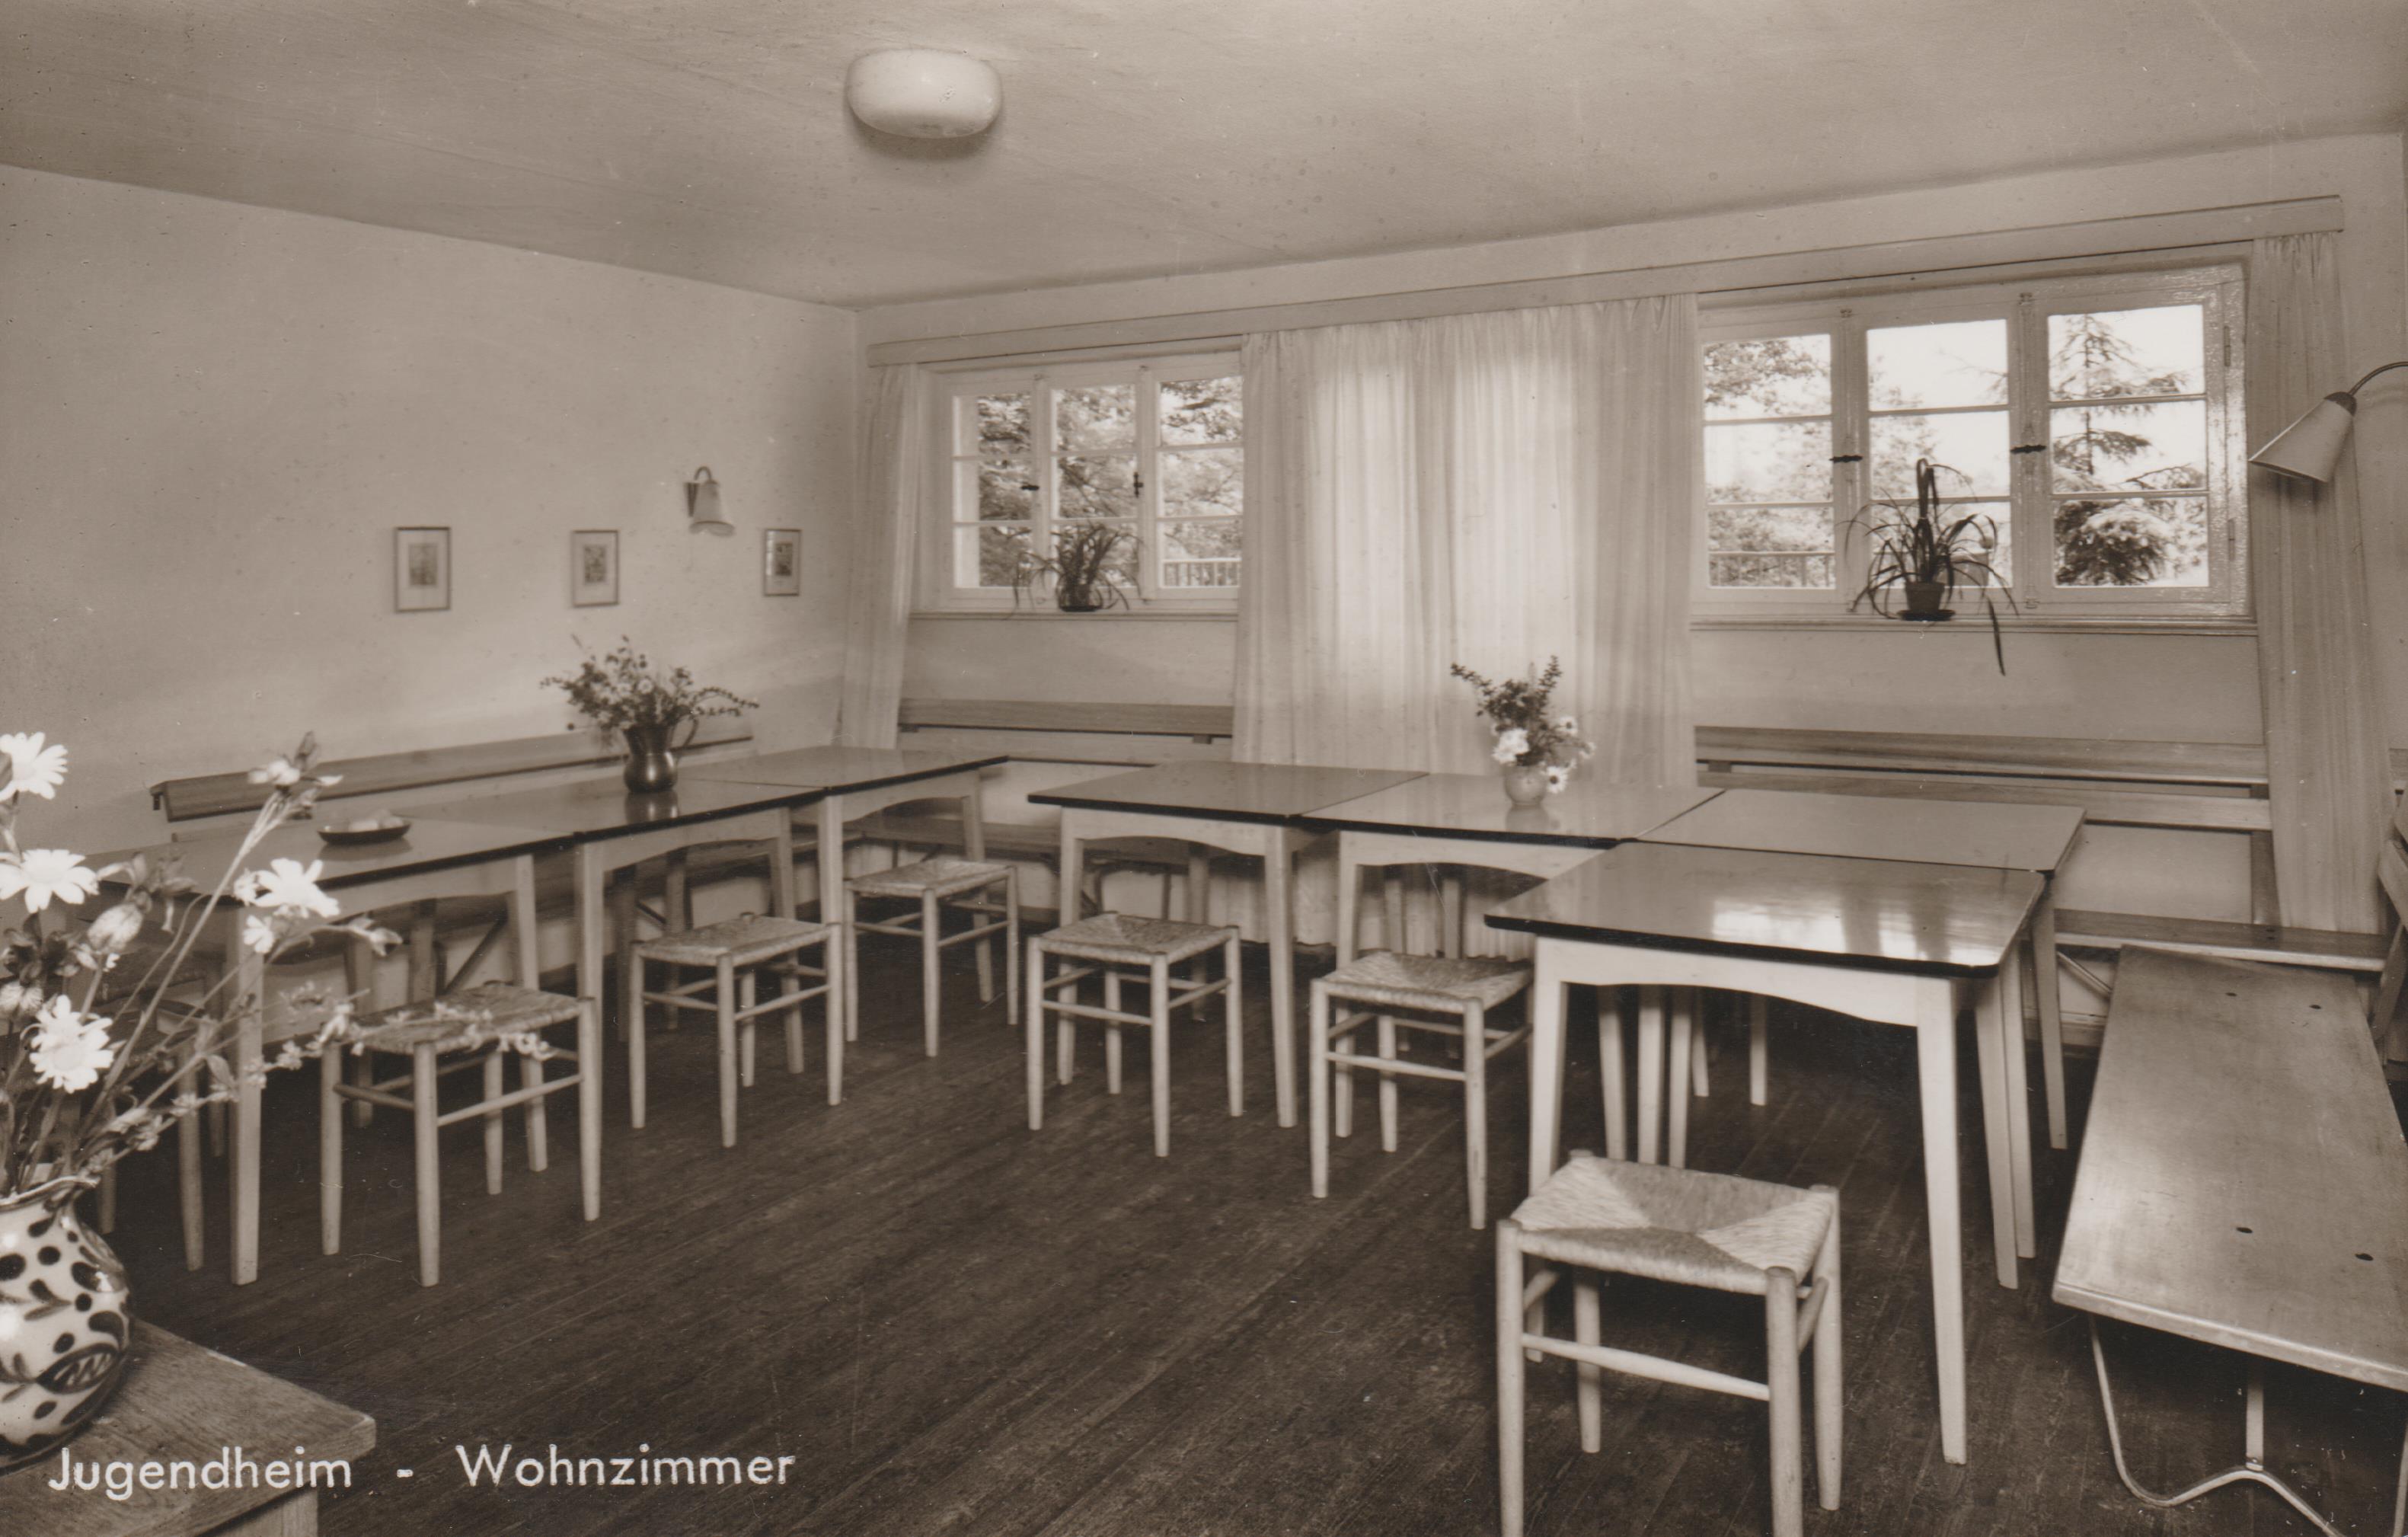 Hedwig-Dransfeld-Haus in Bendorf, Erholungsheim des Katholischen Deutschen Frauenbundes (REM CC BY-NC-SA)